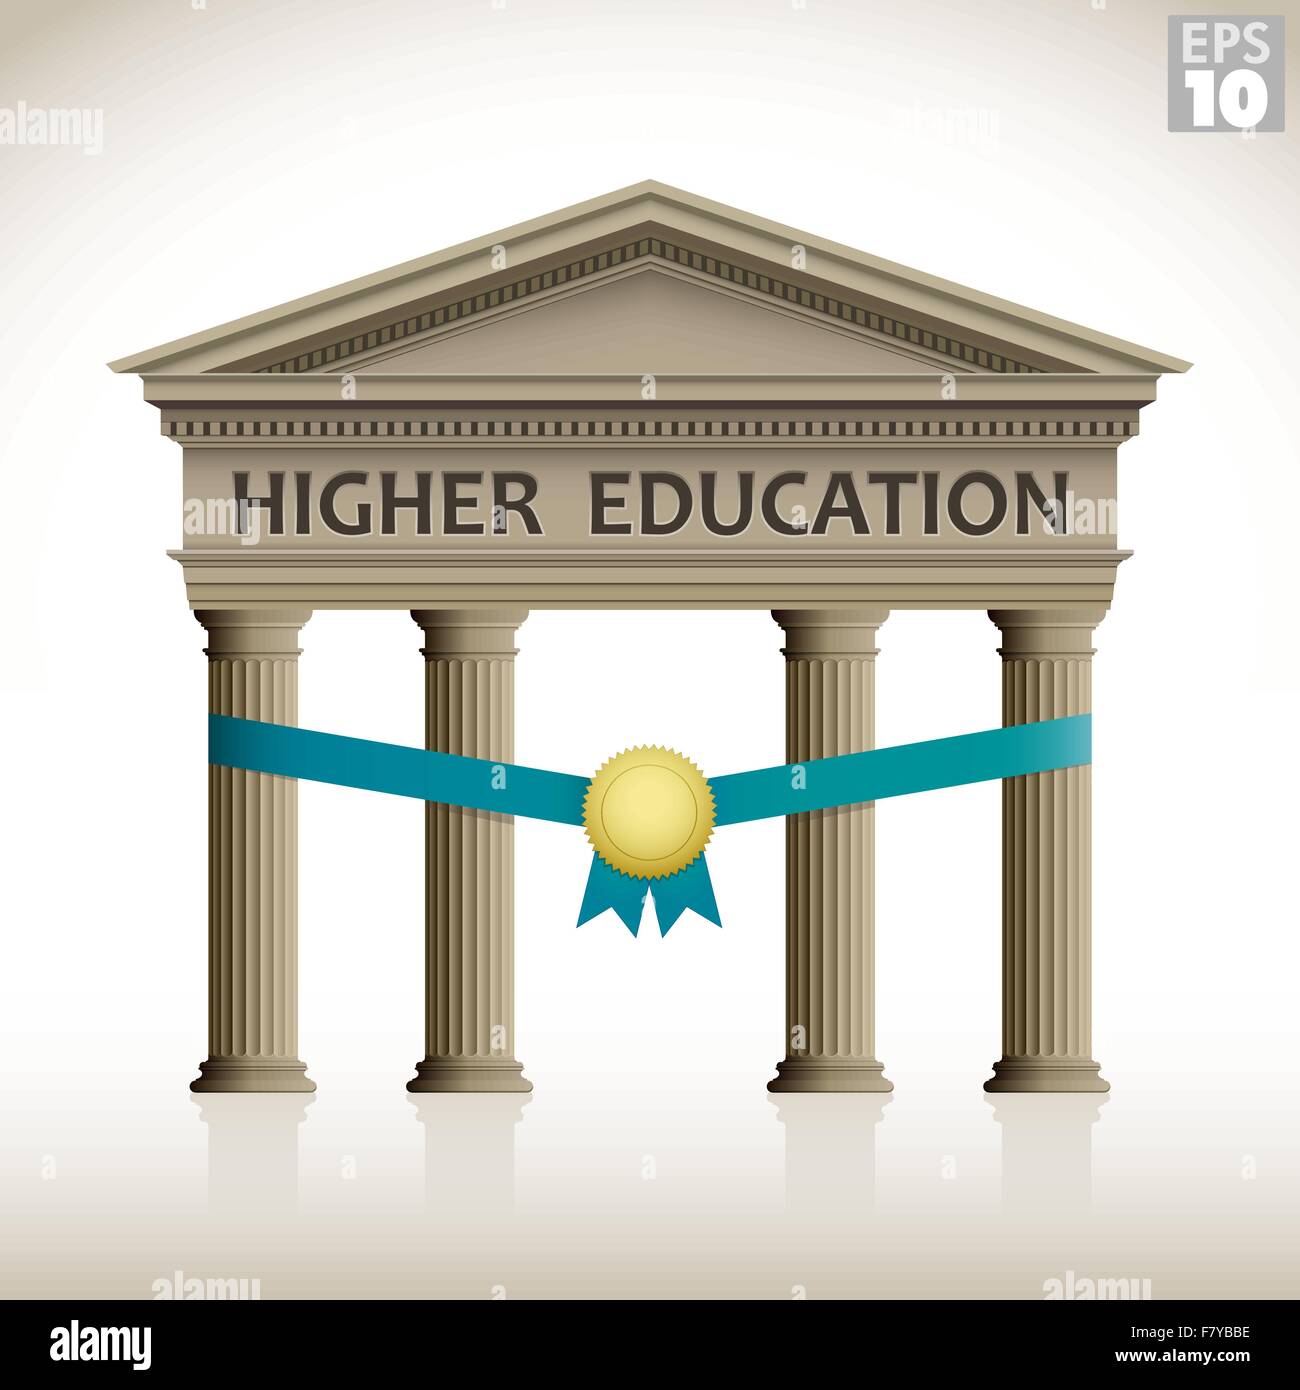 Higher Education römisches Gebäude Einweihung oder Stipendium enthält Spalten, Band und Medaille Stock Vektor